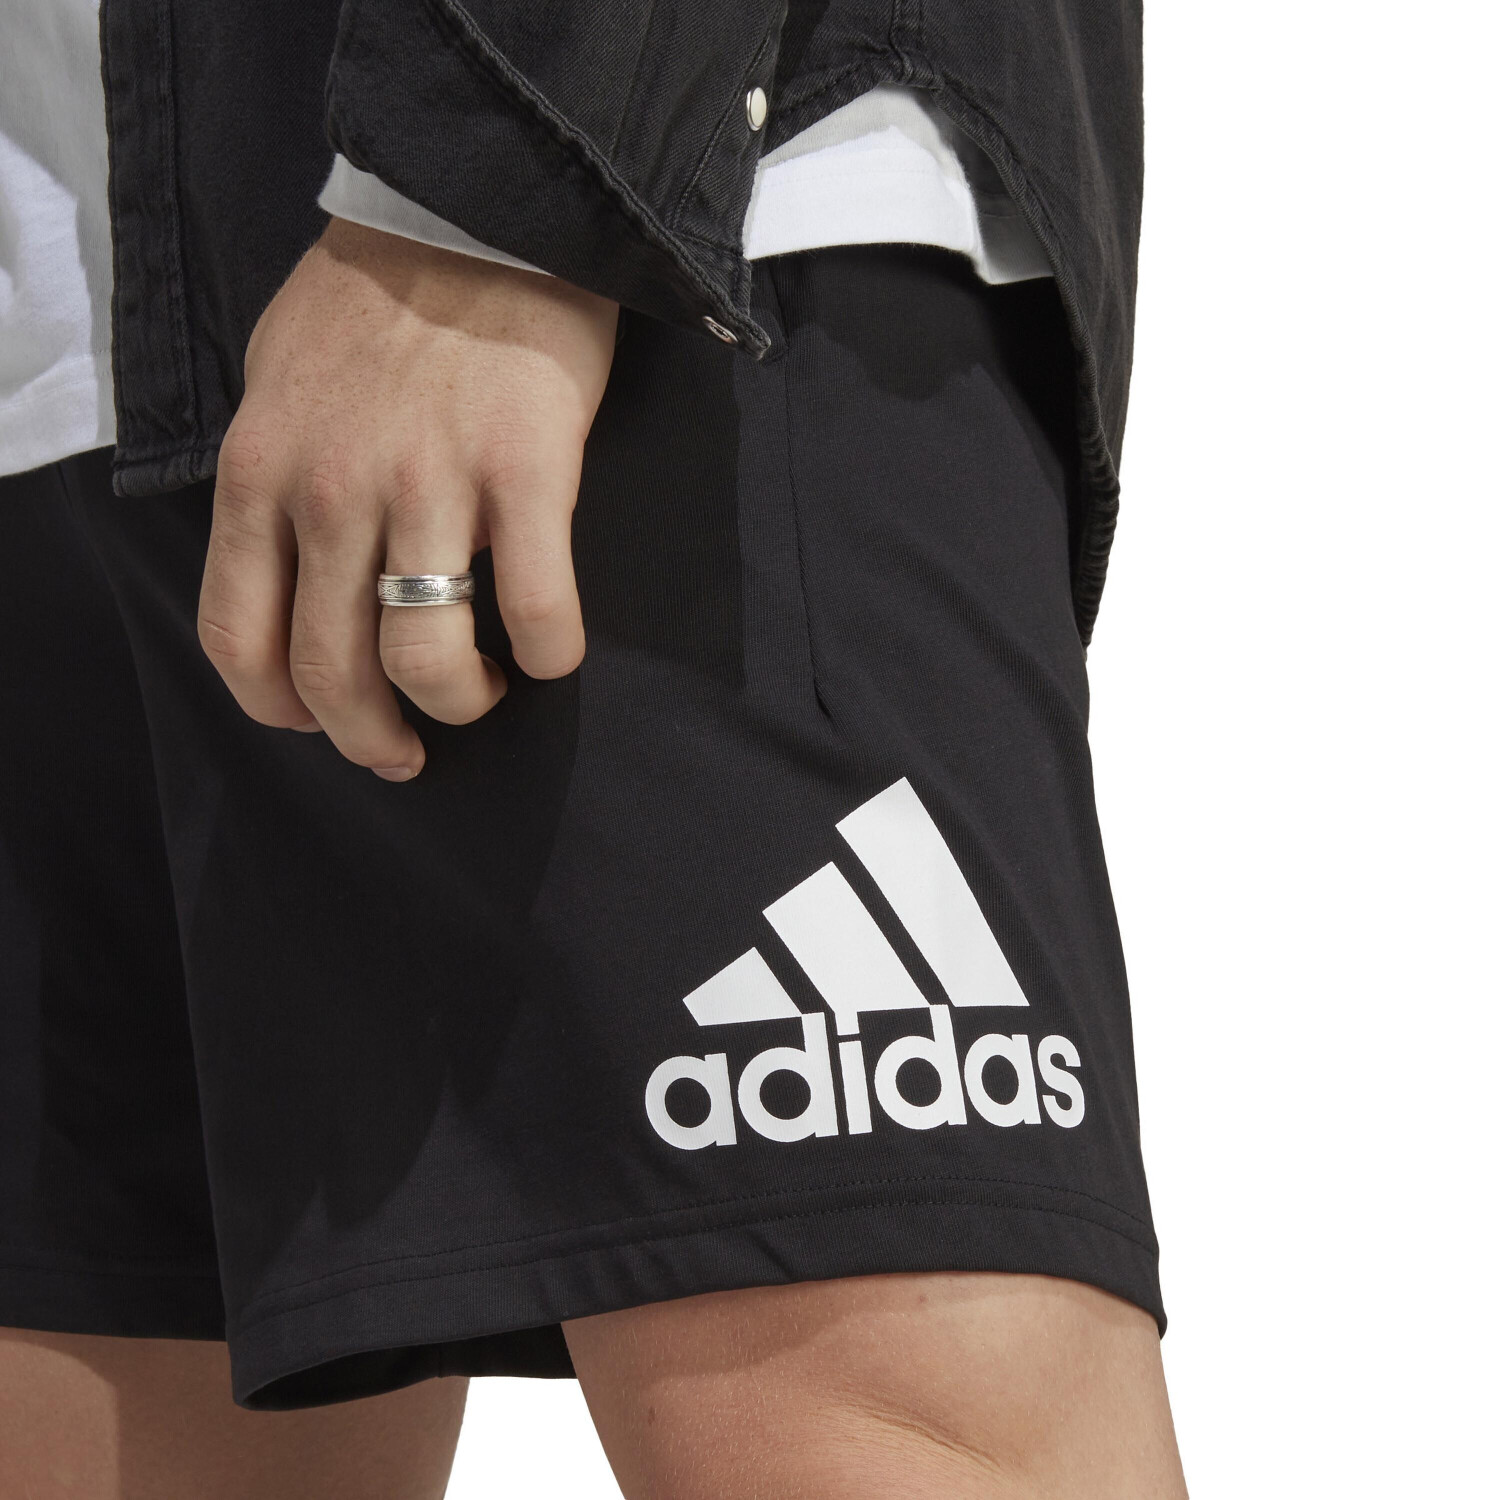 Adidas Shorts Men (IC9375) black/white ab 22,99 € | Preisvergleich bei ...